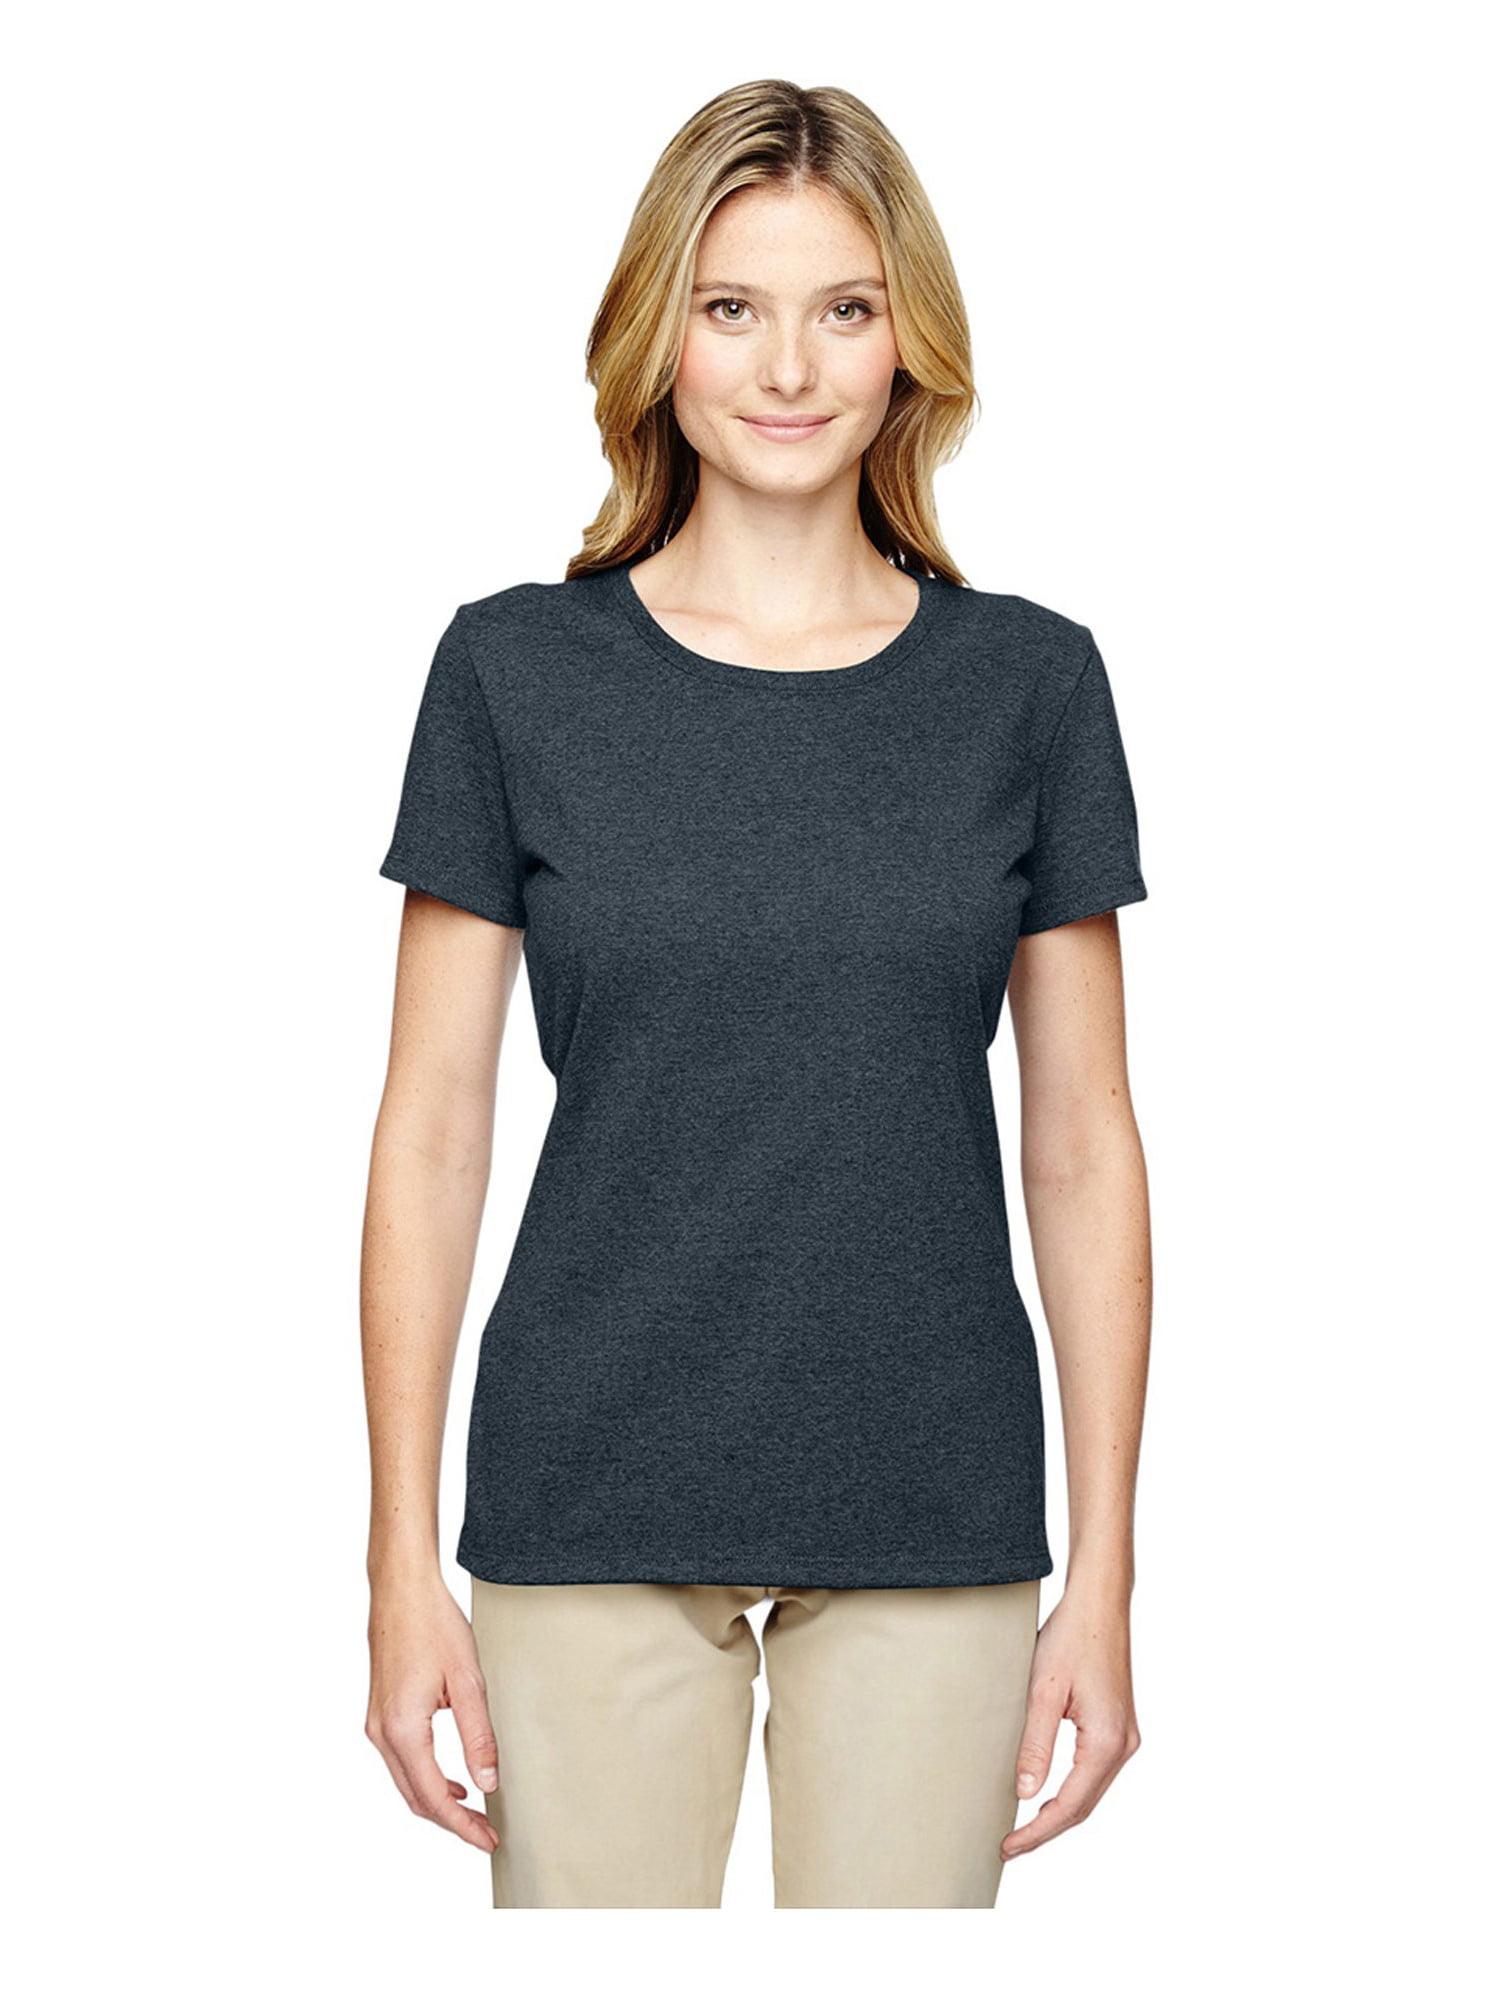 JERZEES - Jerzees Women's Advanced Moisture Management T-Shirt, Style ...